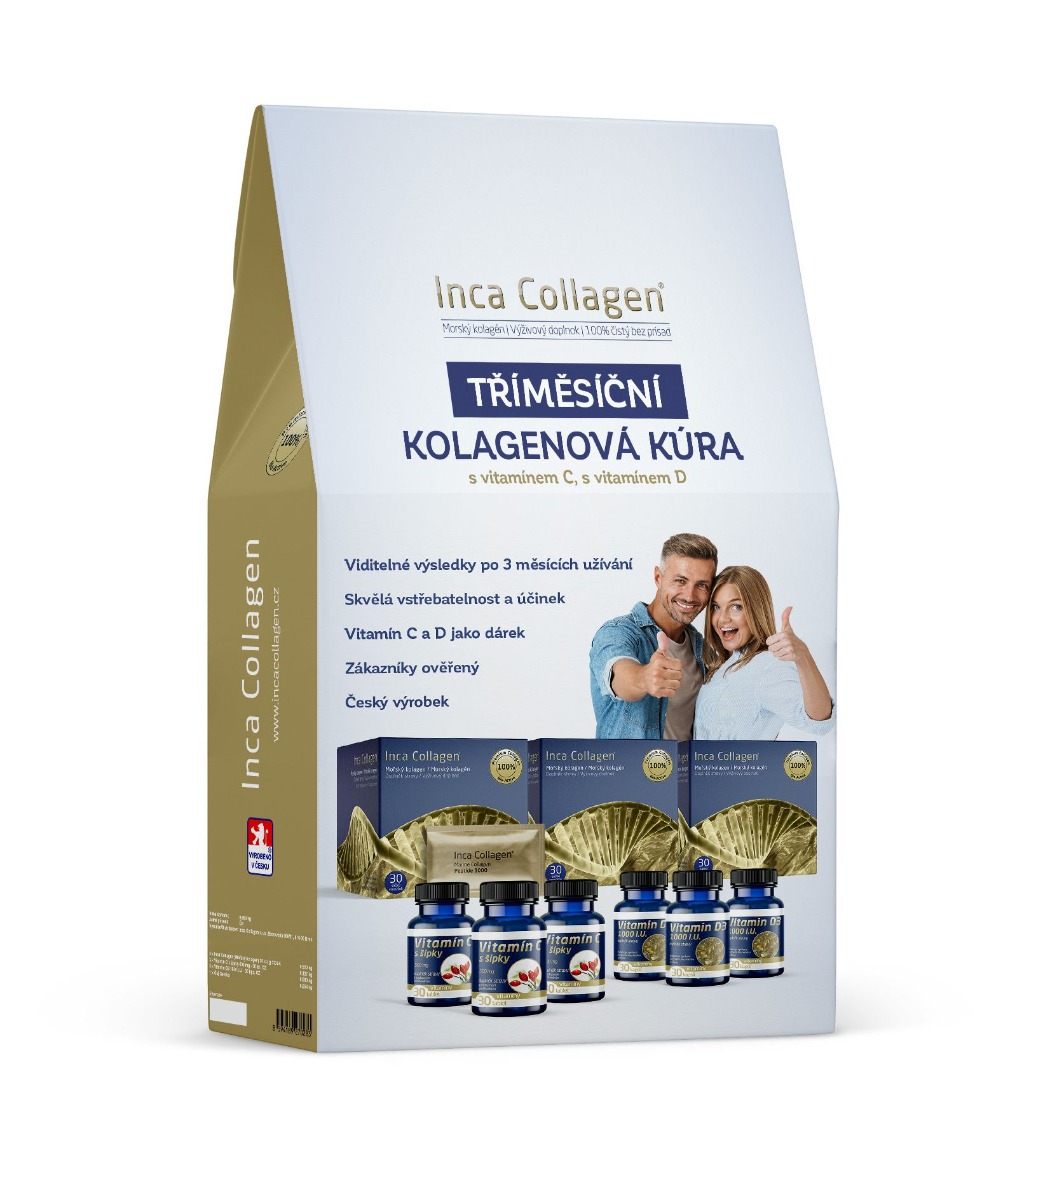 Inca Collagen Tříměsíční kolagenová kúra s vitamínem C a D Inca Collagen